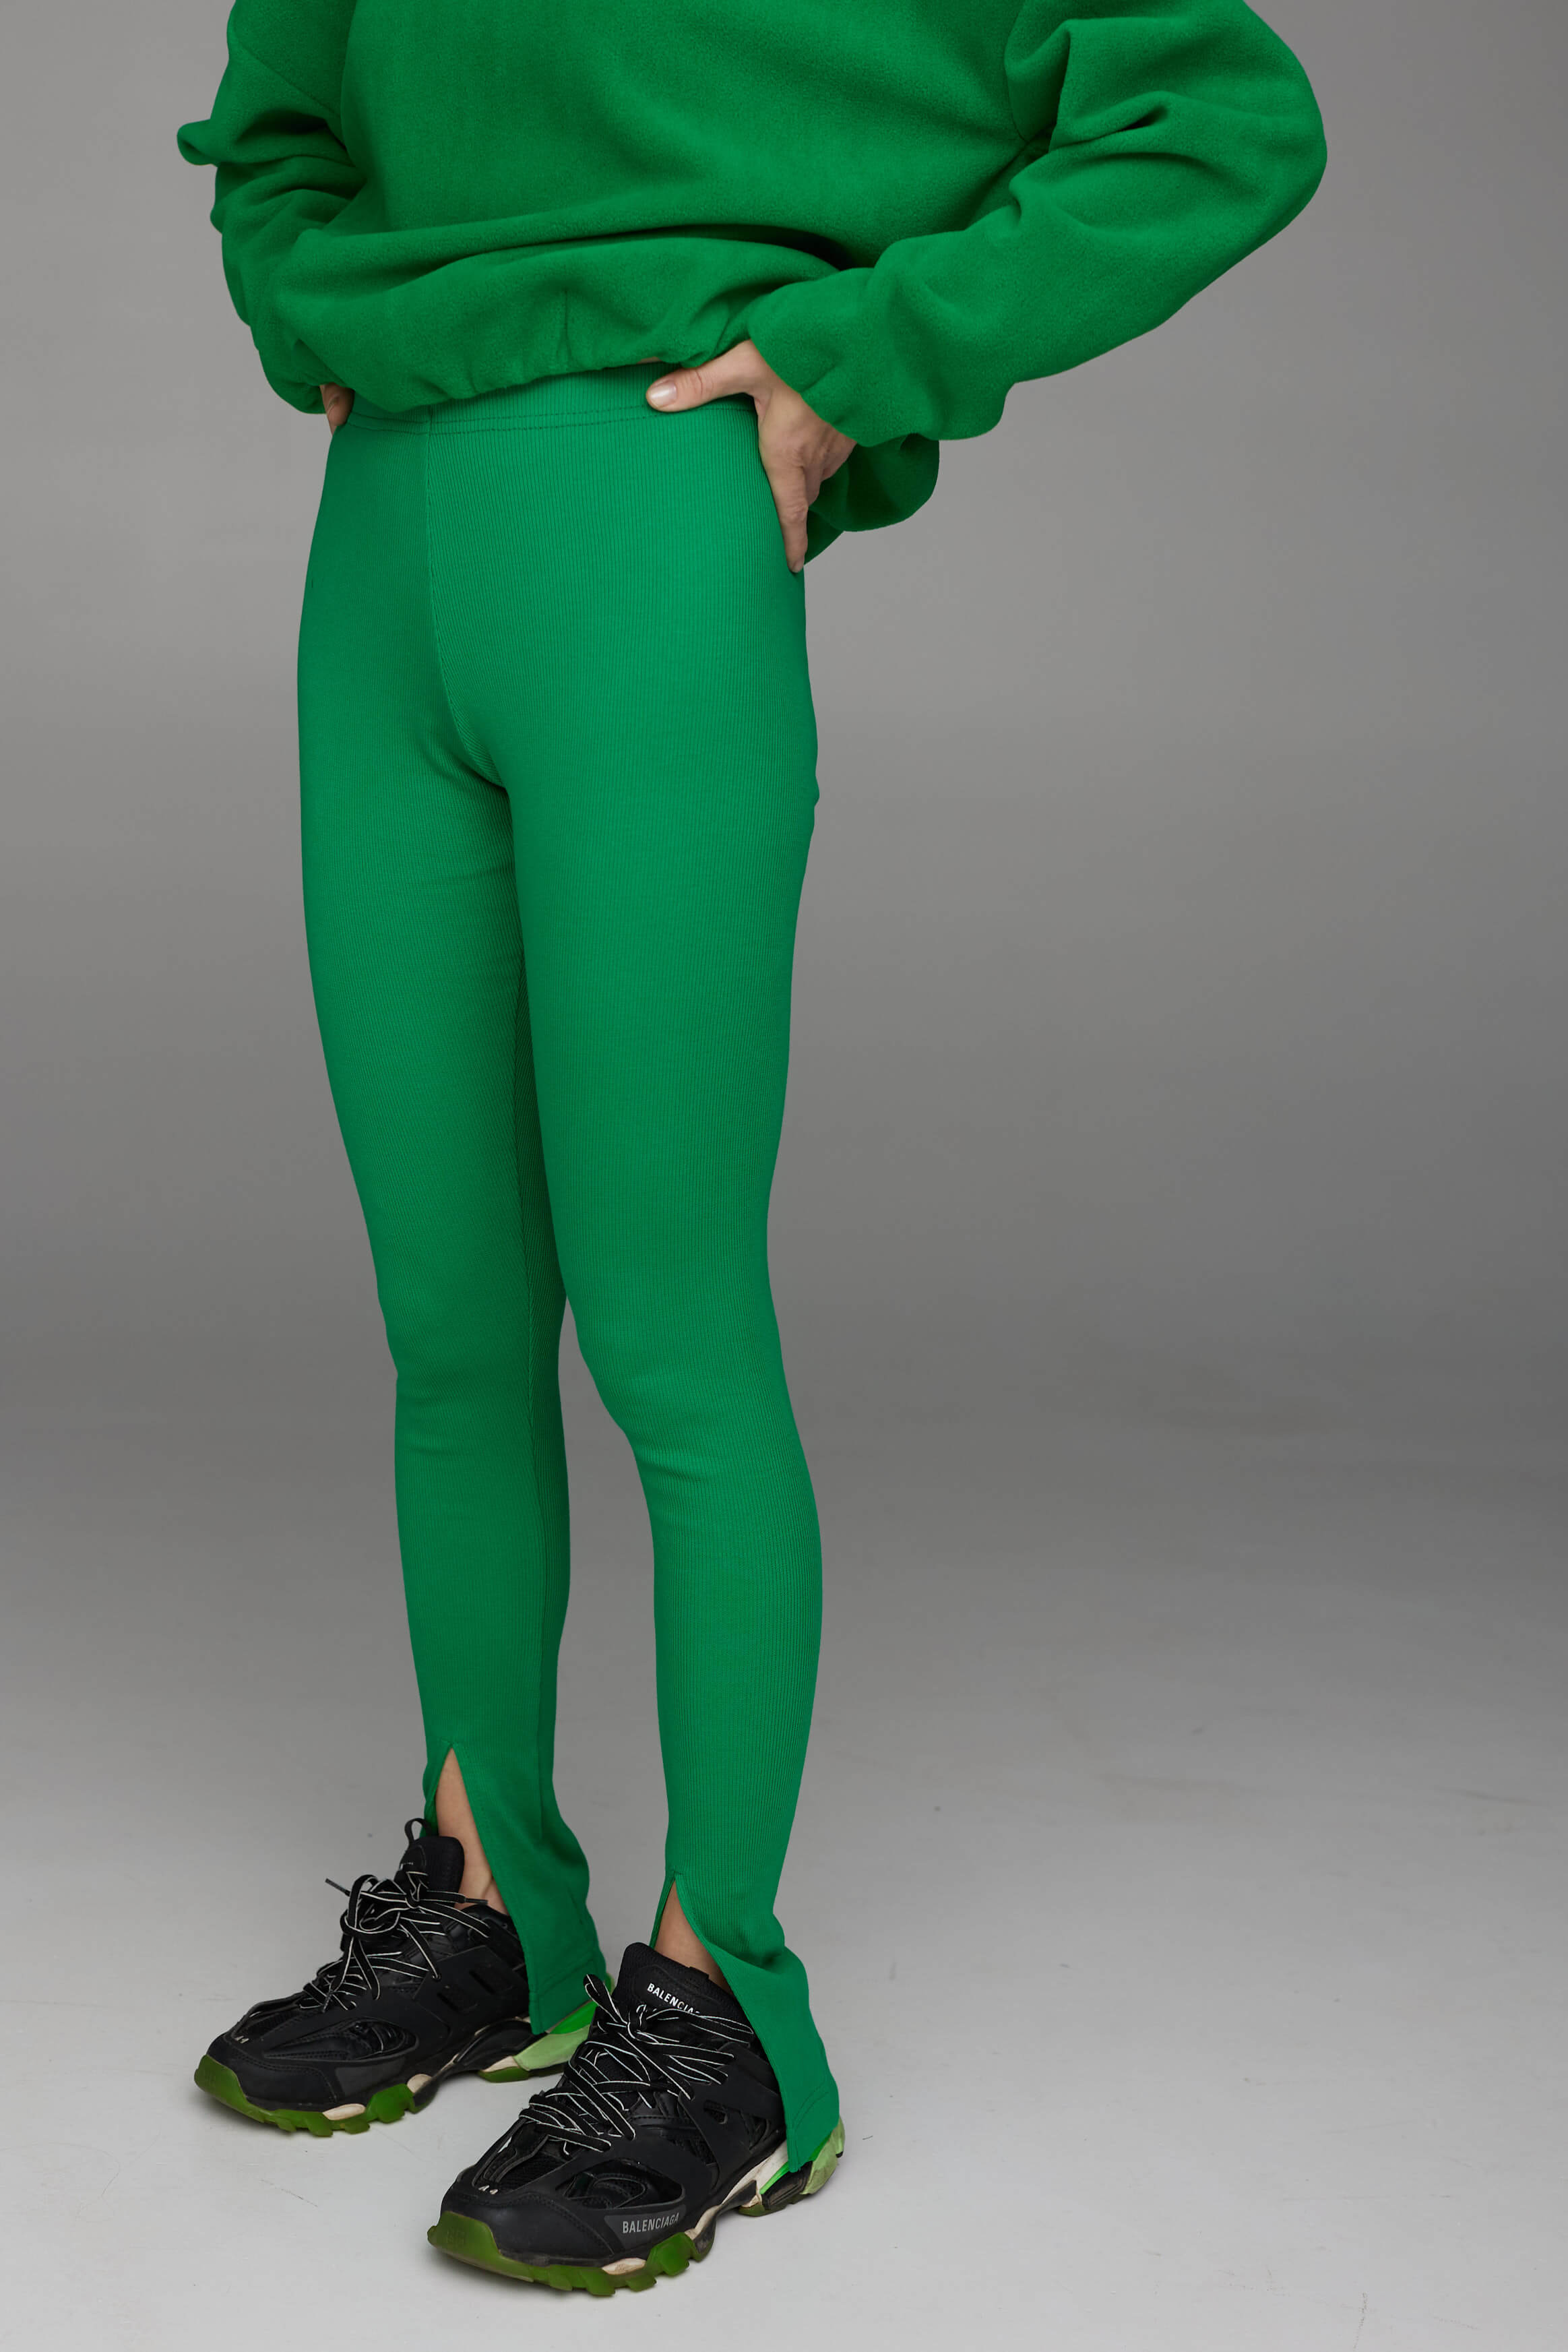 slit leggins ribbed in green color